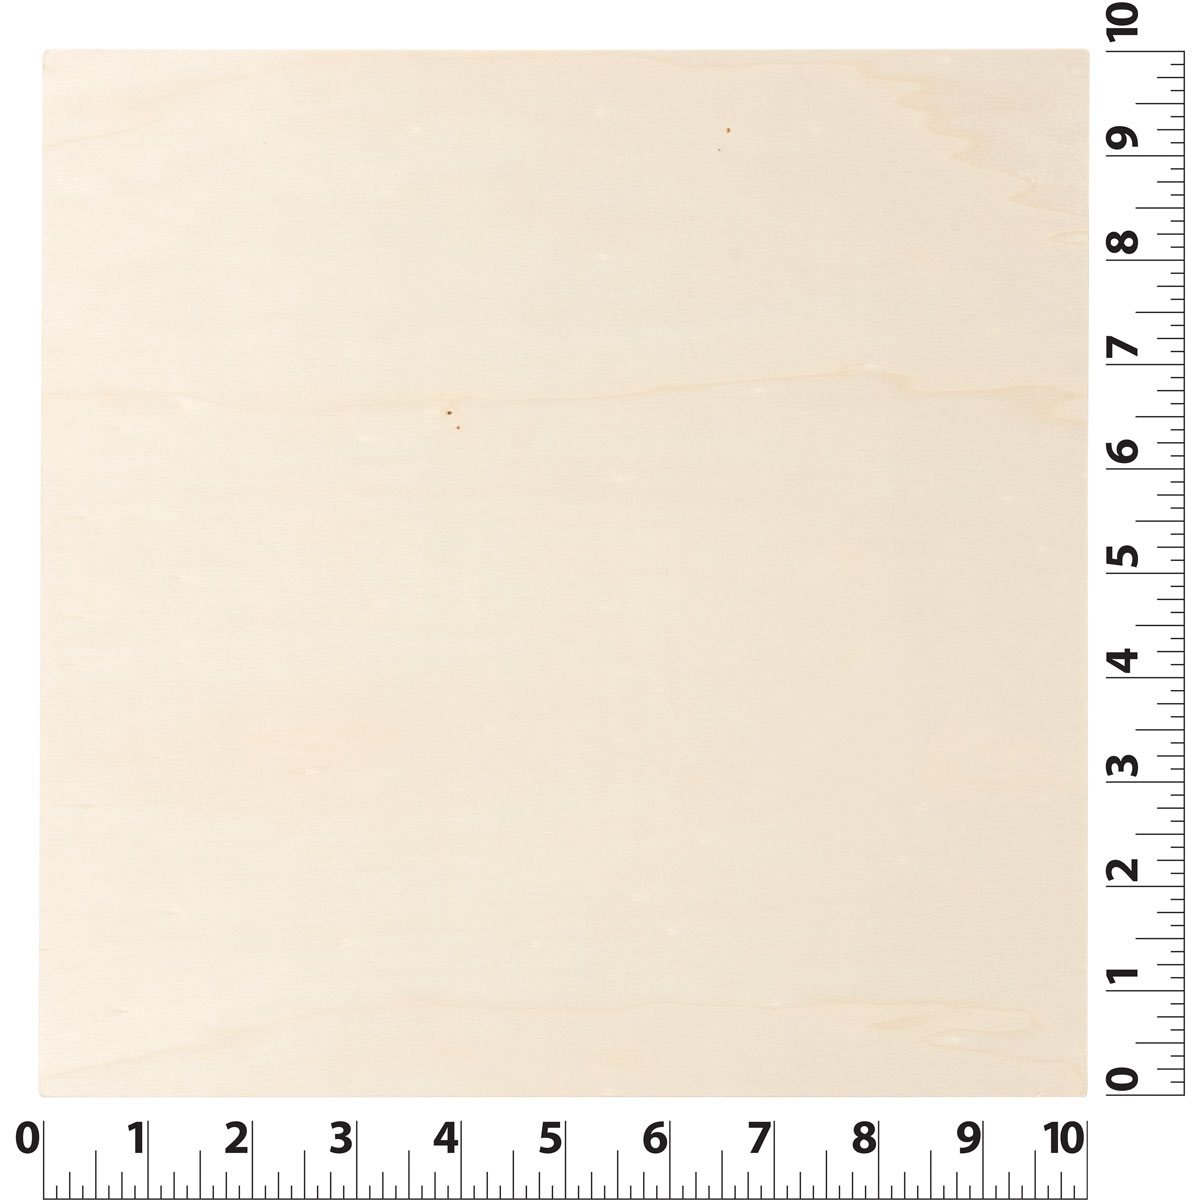 Plaid ® Wood Surfaces - Plywood Panel Bundle, 4 pieces, 10